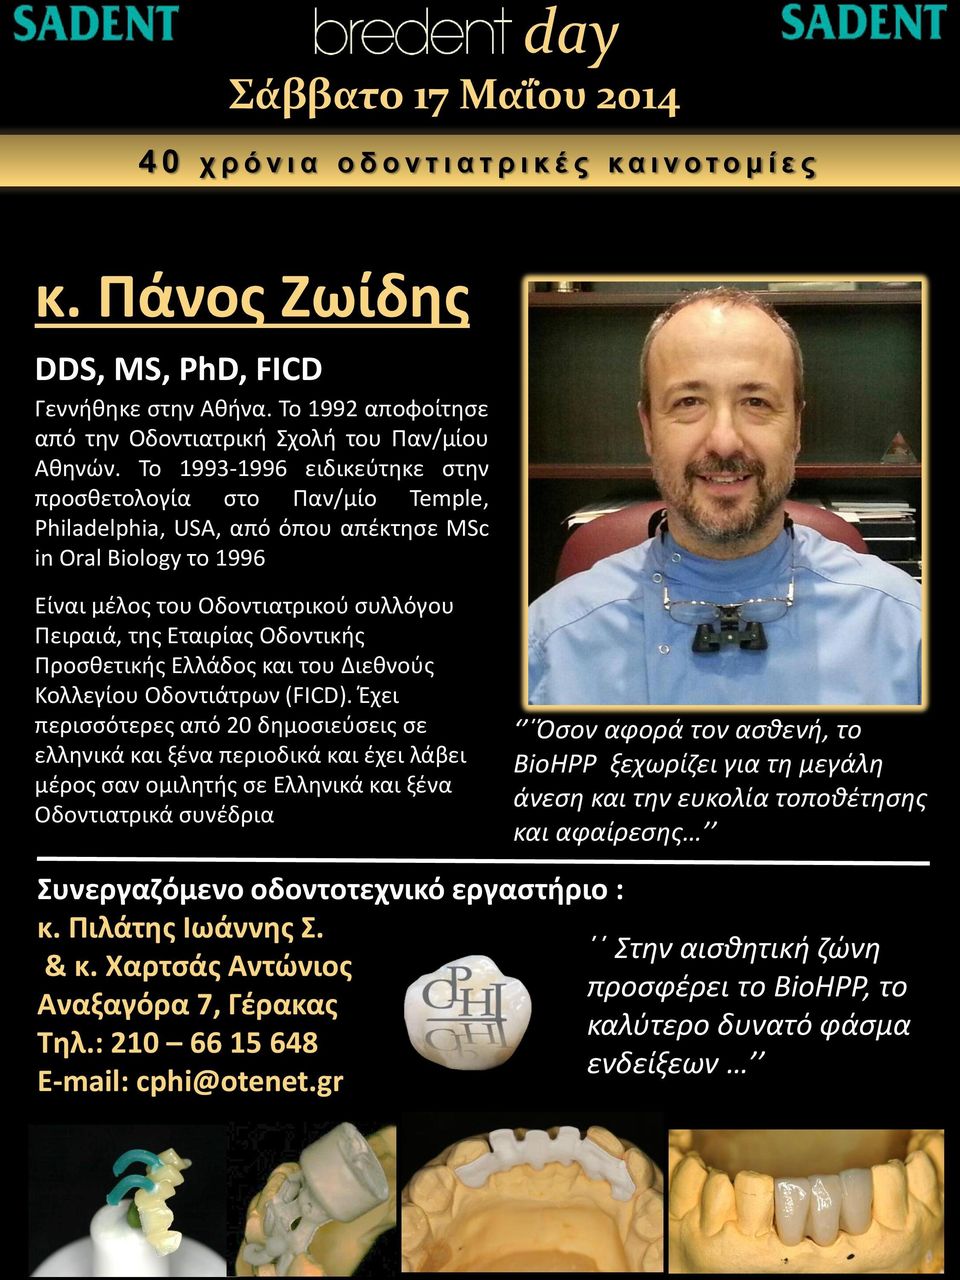 Προσθετικής Ελλάδος και του Διεθνούς Κολλεγίου Οδοντιάτρων (FICD).